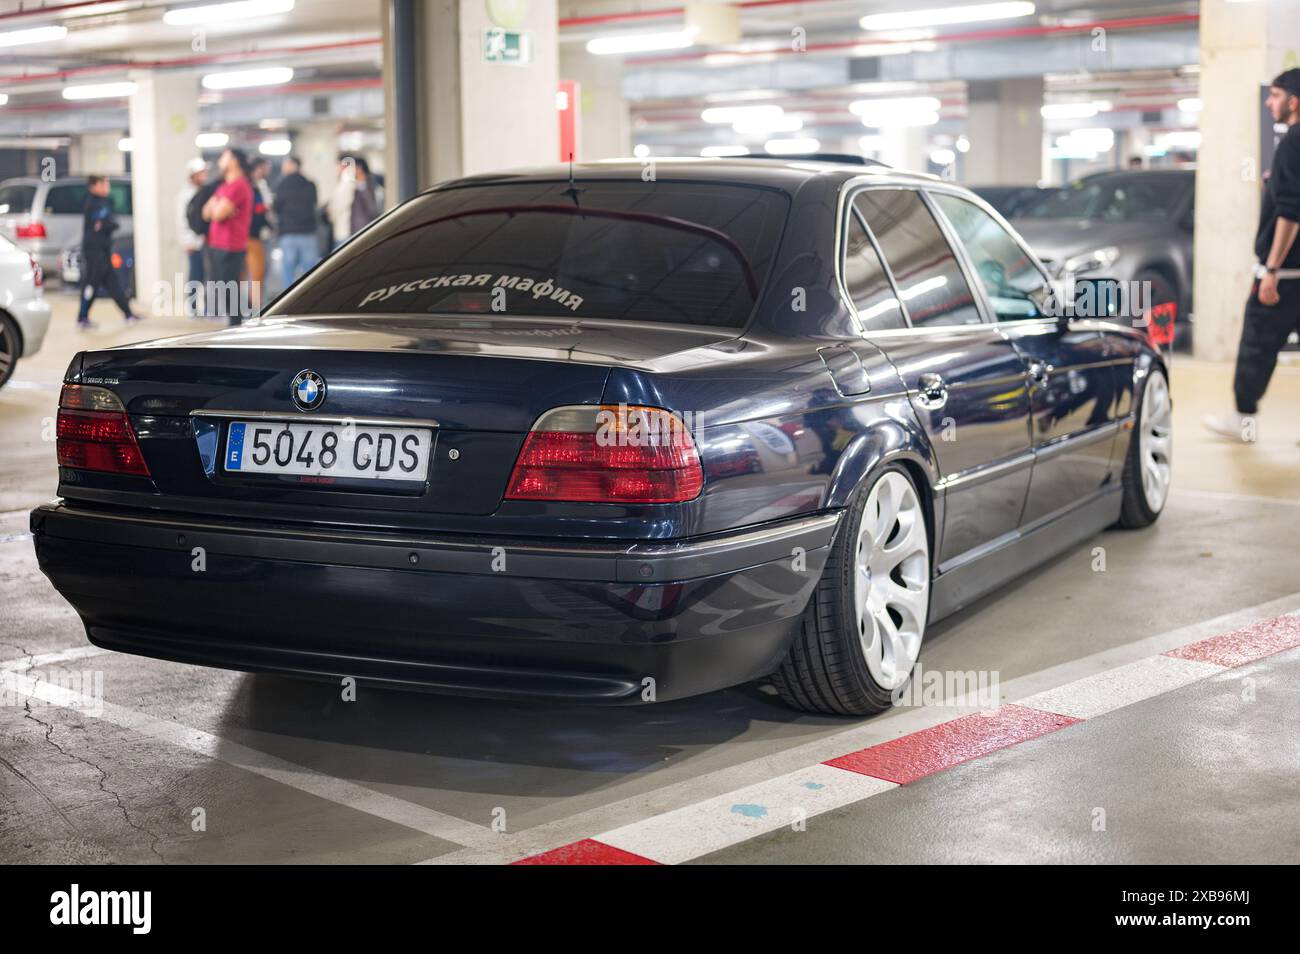 Auto tedesca classica BMW E38 di colore scuro con la bandiera dell'aquila imperiale tedesca sui parafanghi anteriori. Si tratta di un'aquila a due teste su sfondo rosso Foto Stock